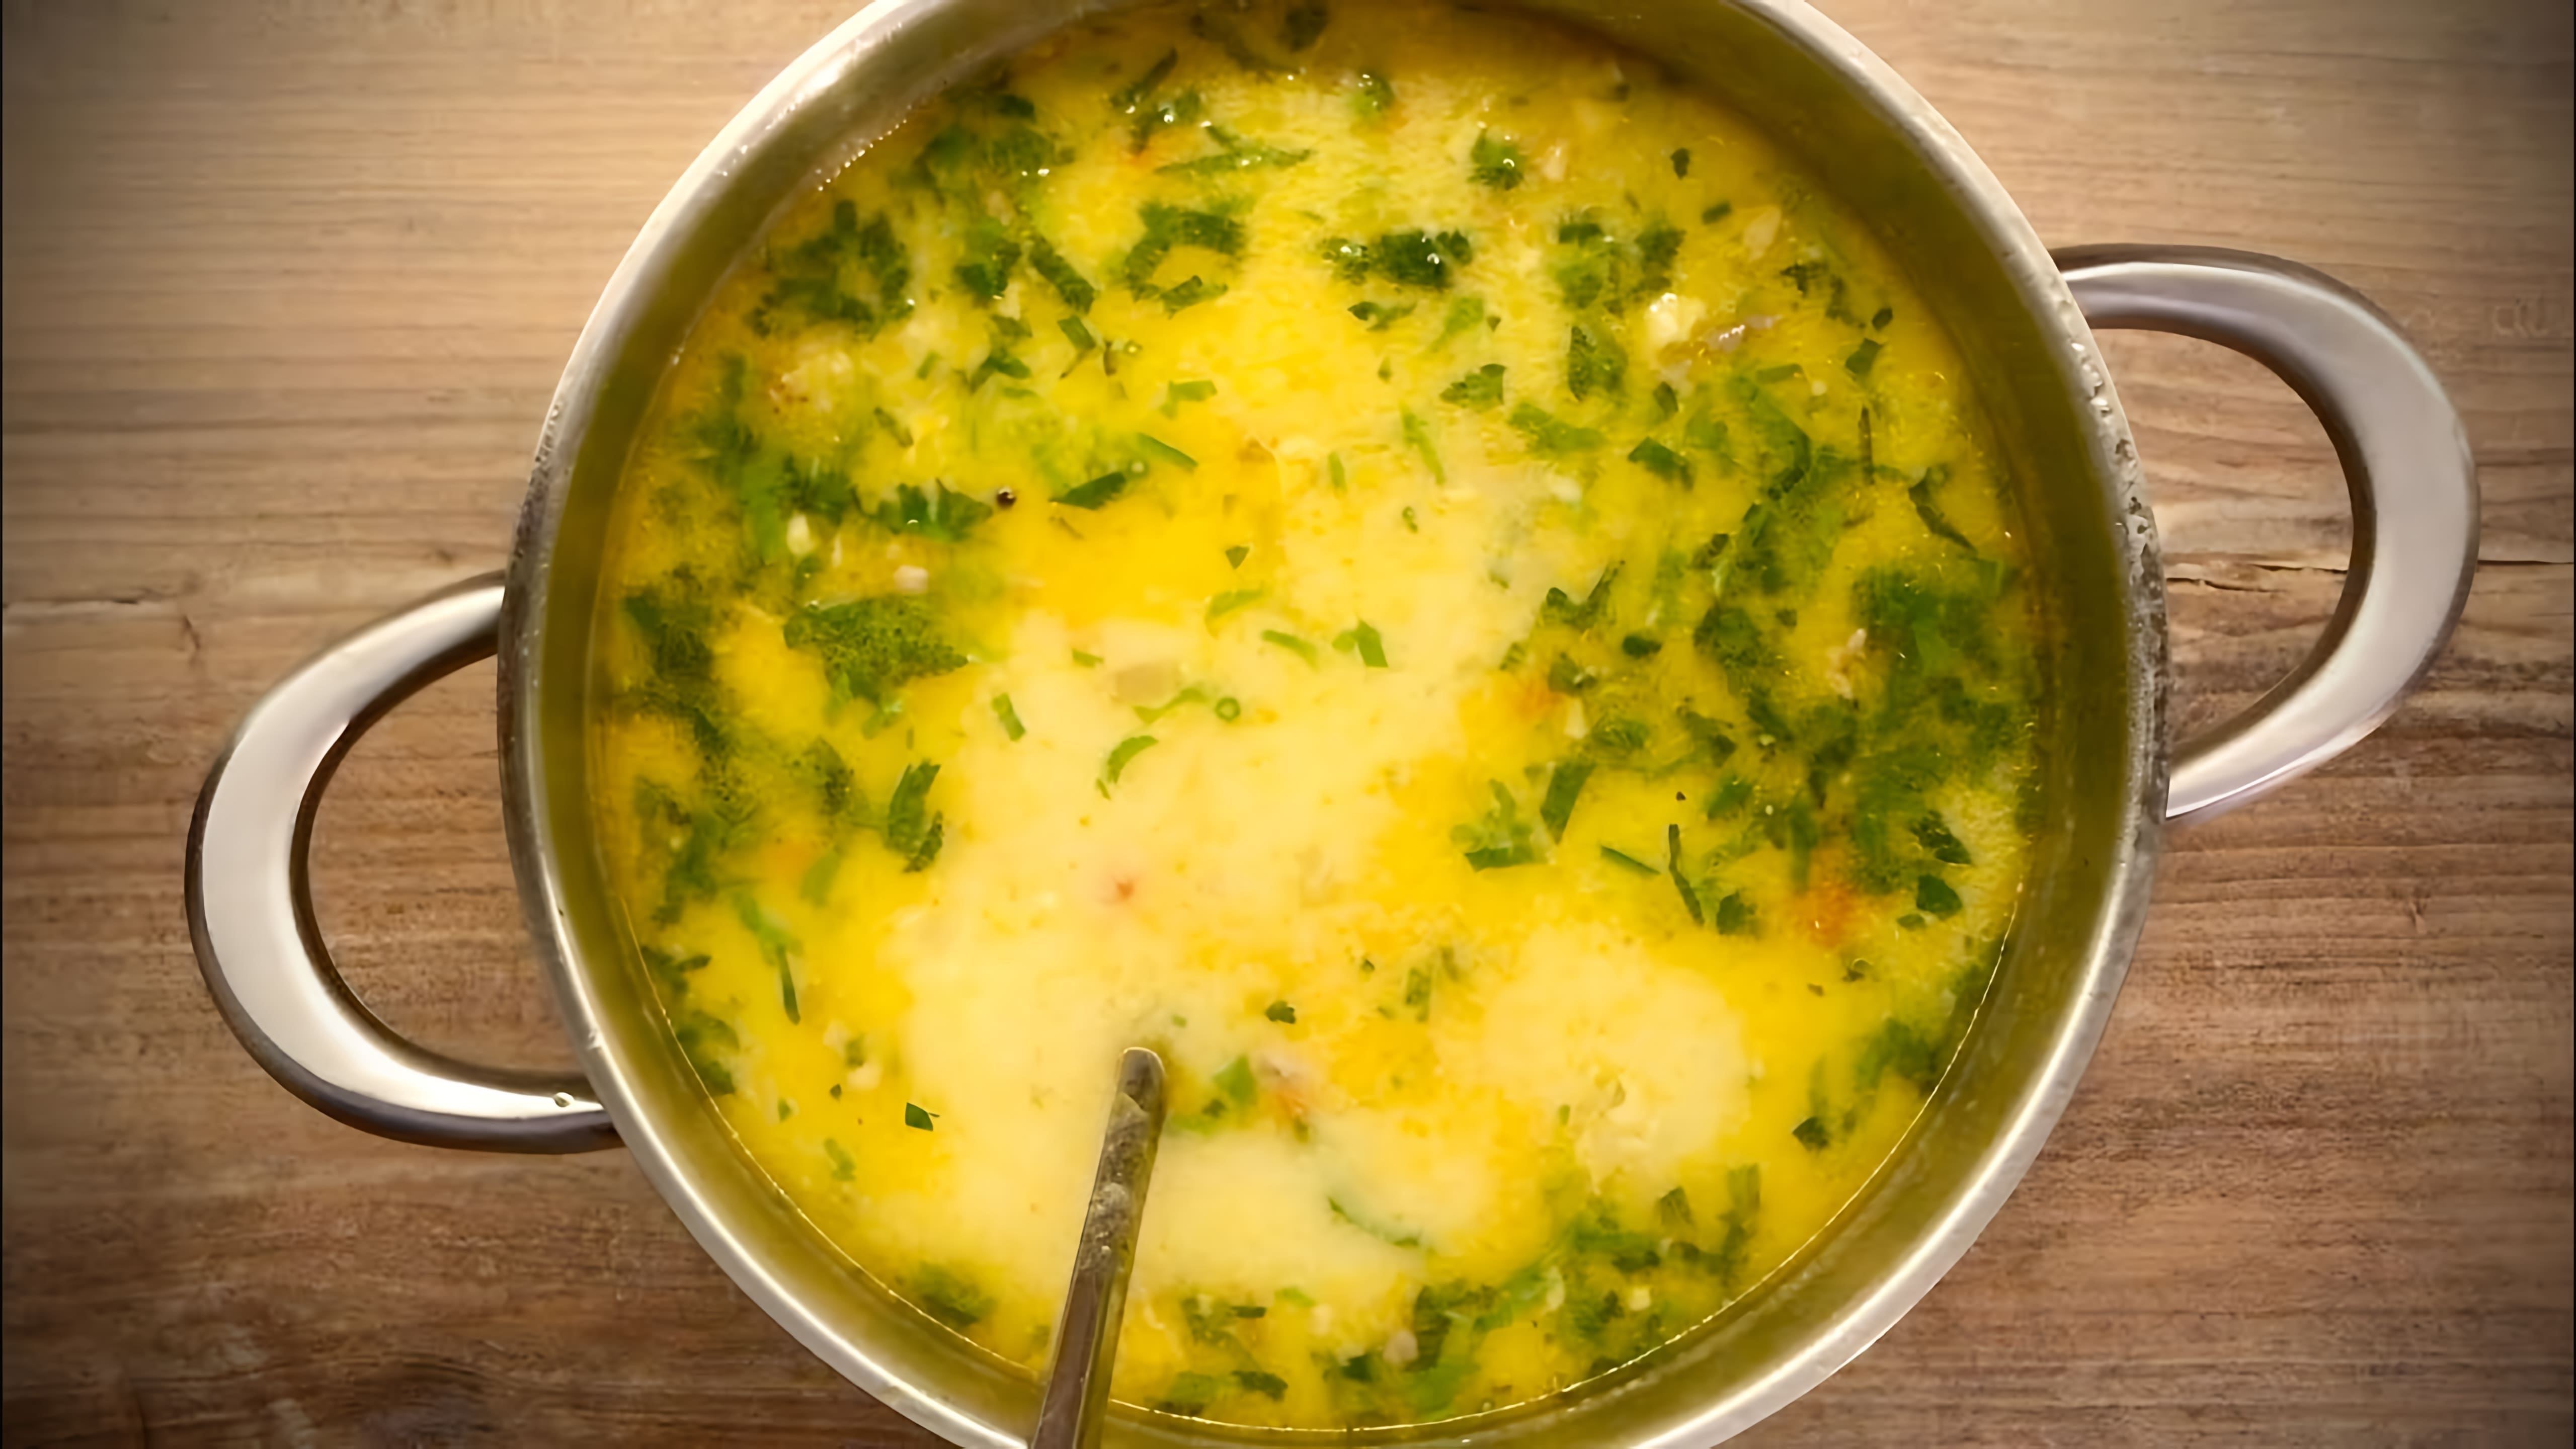 "Пилешка супа" - это видео-ролик, который показывает, как правильно приготовить суп с курицей